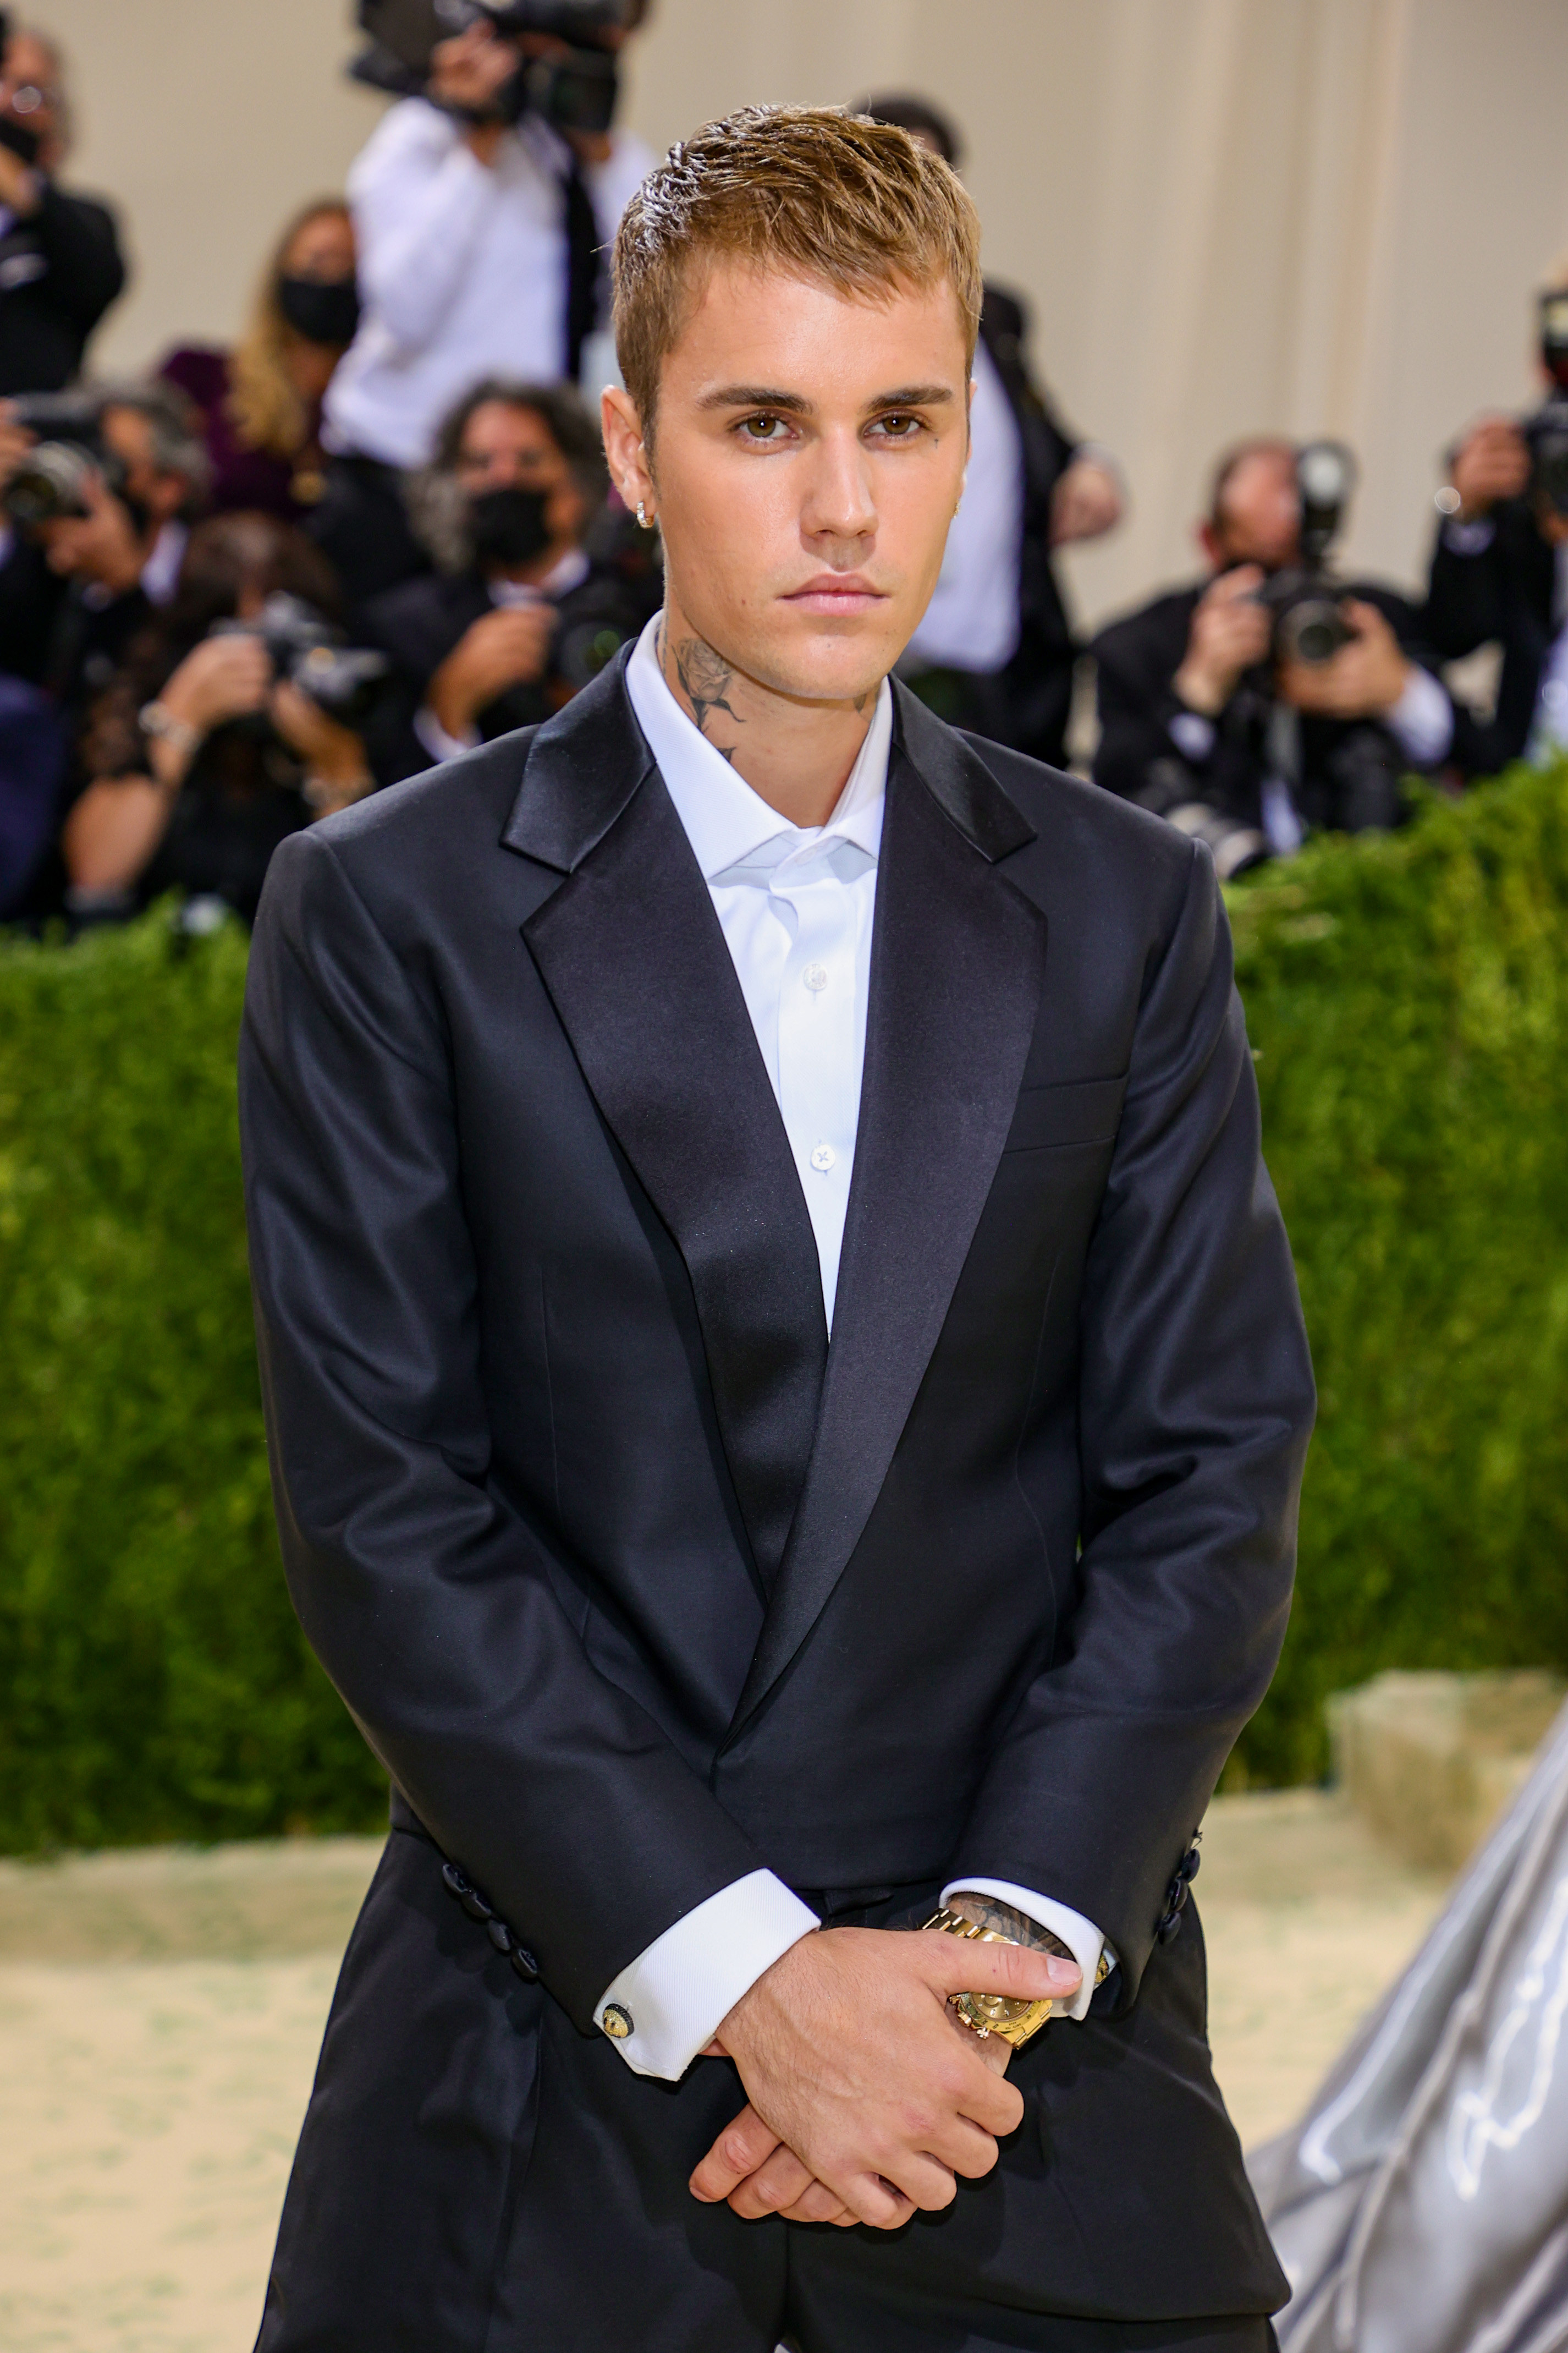 Justin Bieber poses at the 2021 Met Gala